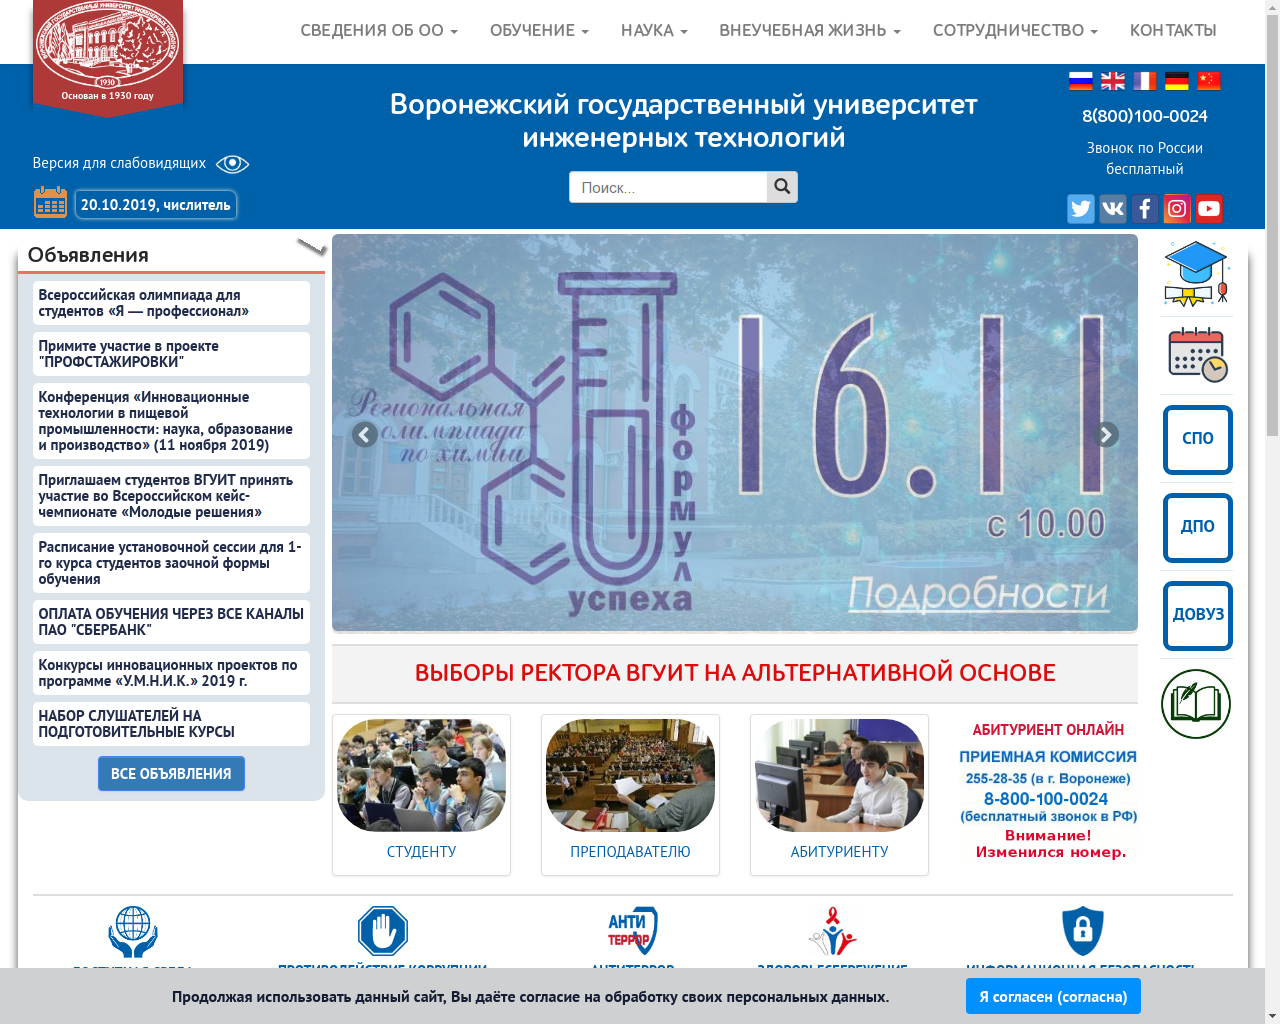 Изображение сайта vsuet.ru в разрешении 1280x1024